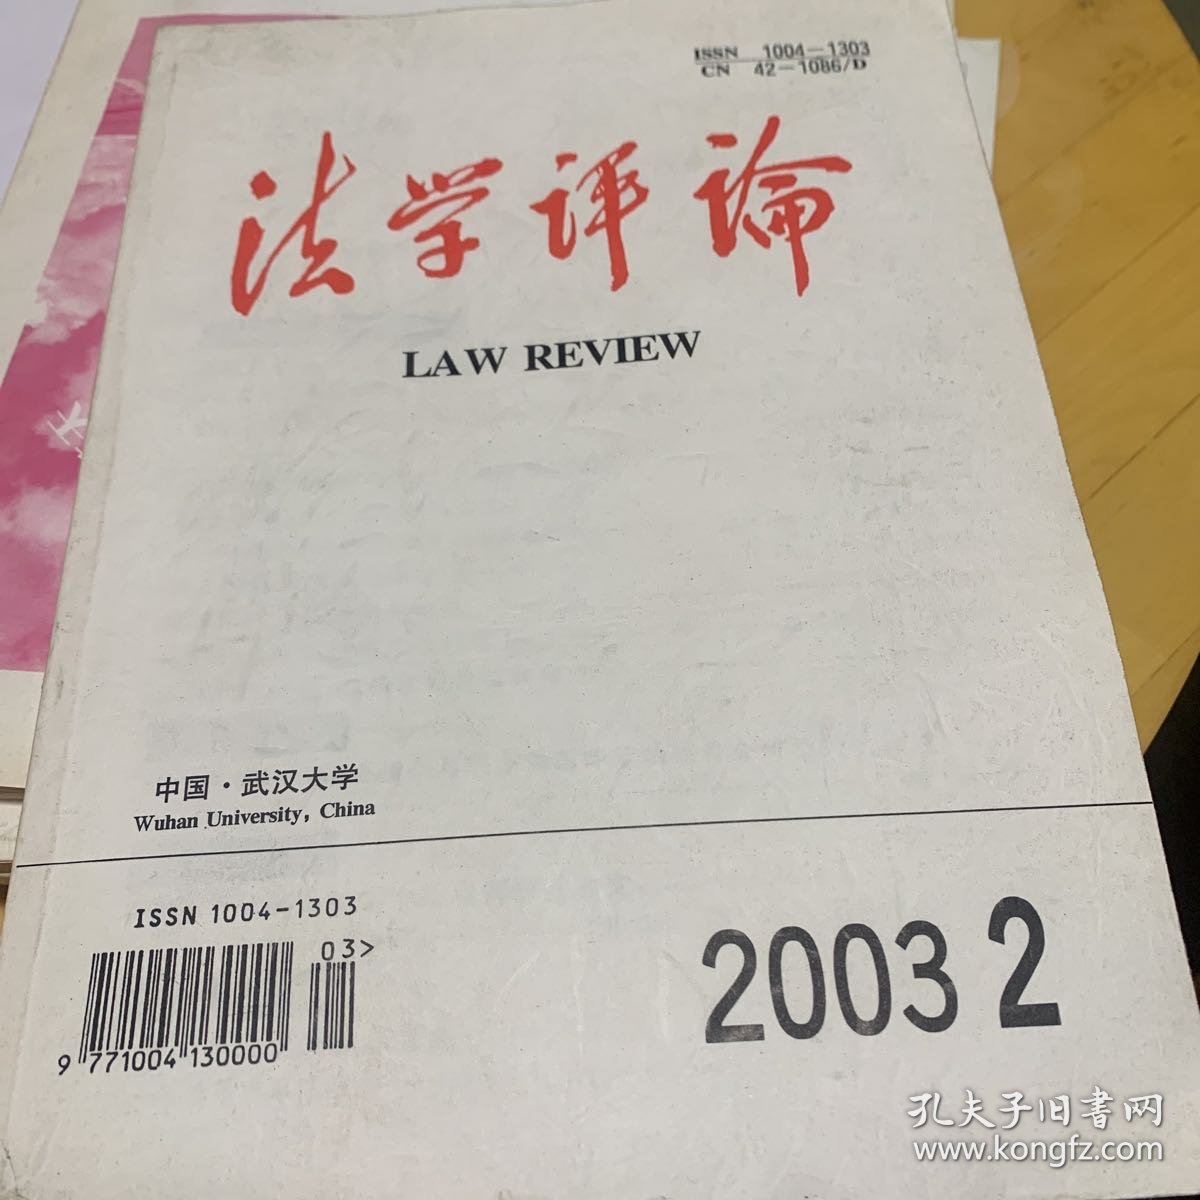 法学评论 武汉大学 2003年第二期